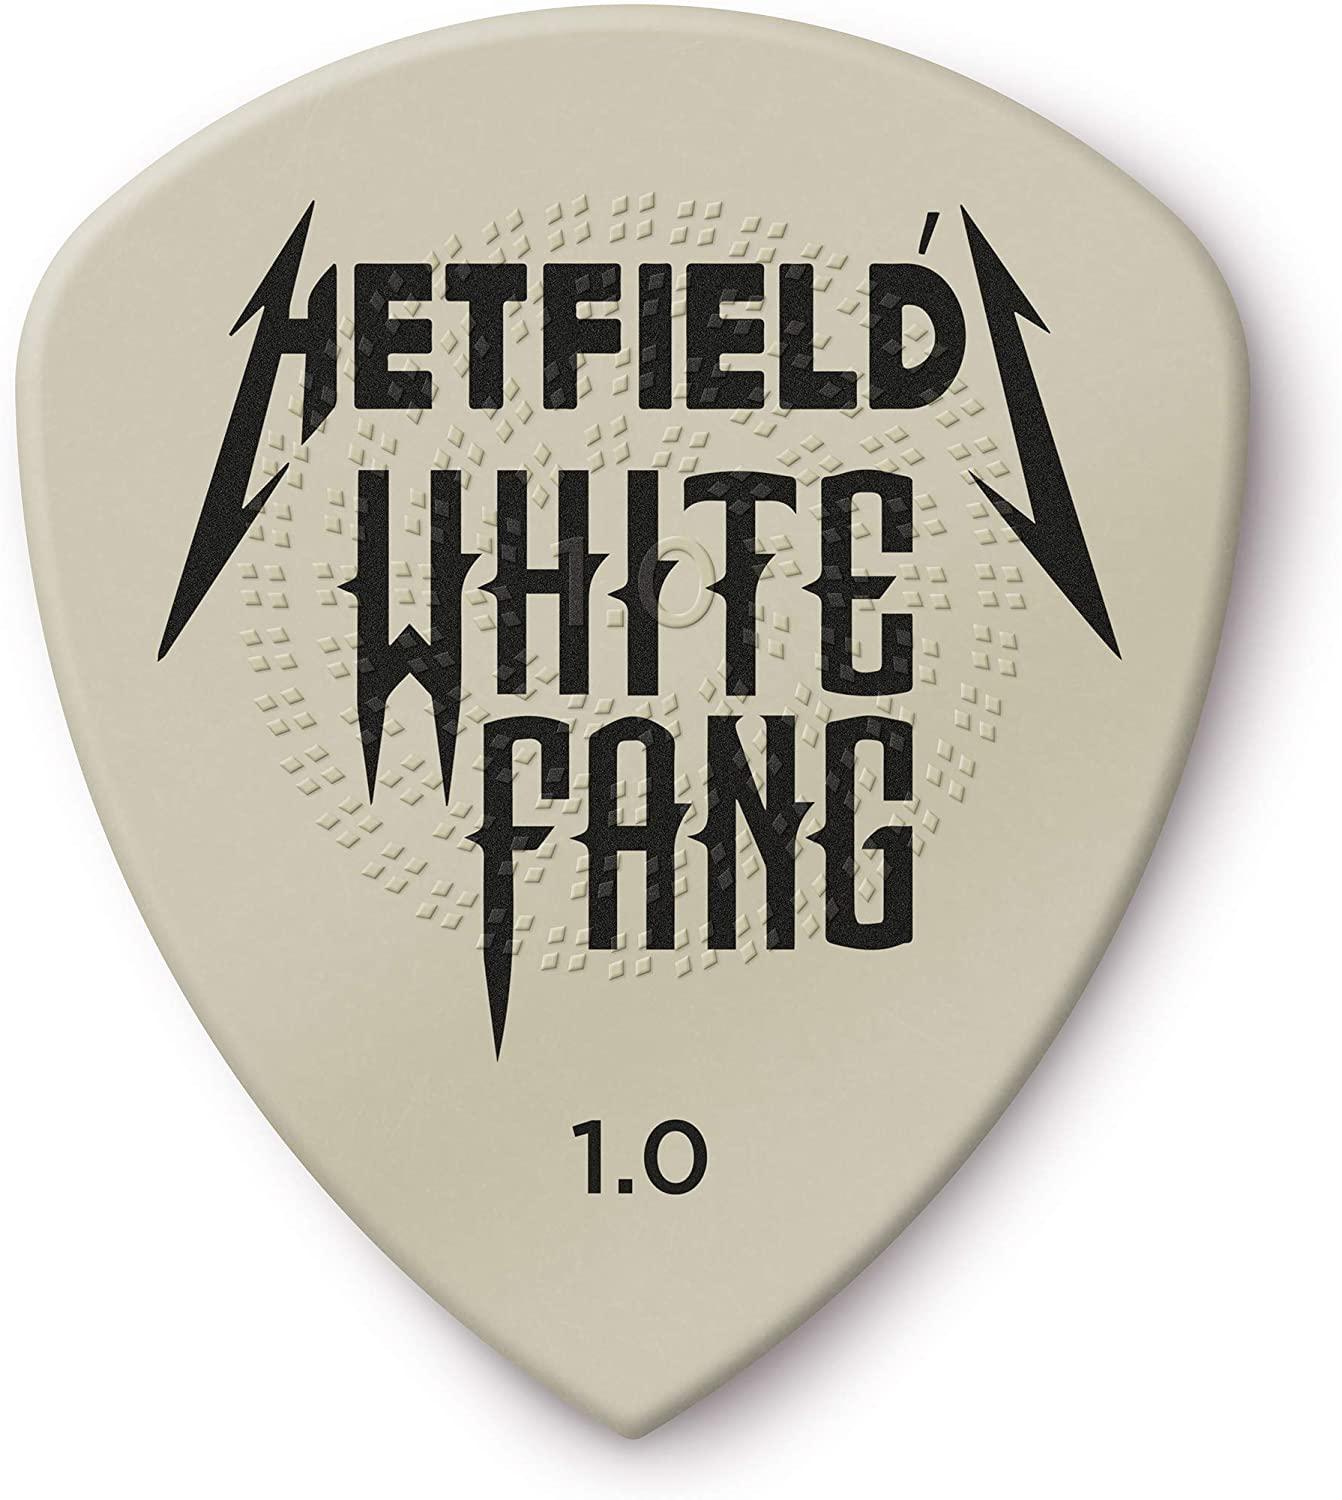 Dunlop - 6 Plumillas James Hetfield White Fang para Guitarra, Tamañi: 1.00 mm Mod.PH122P100_18